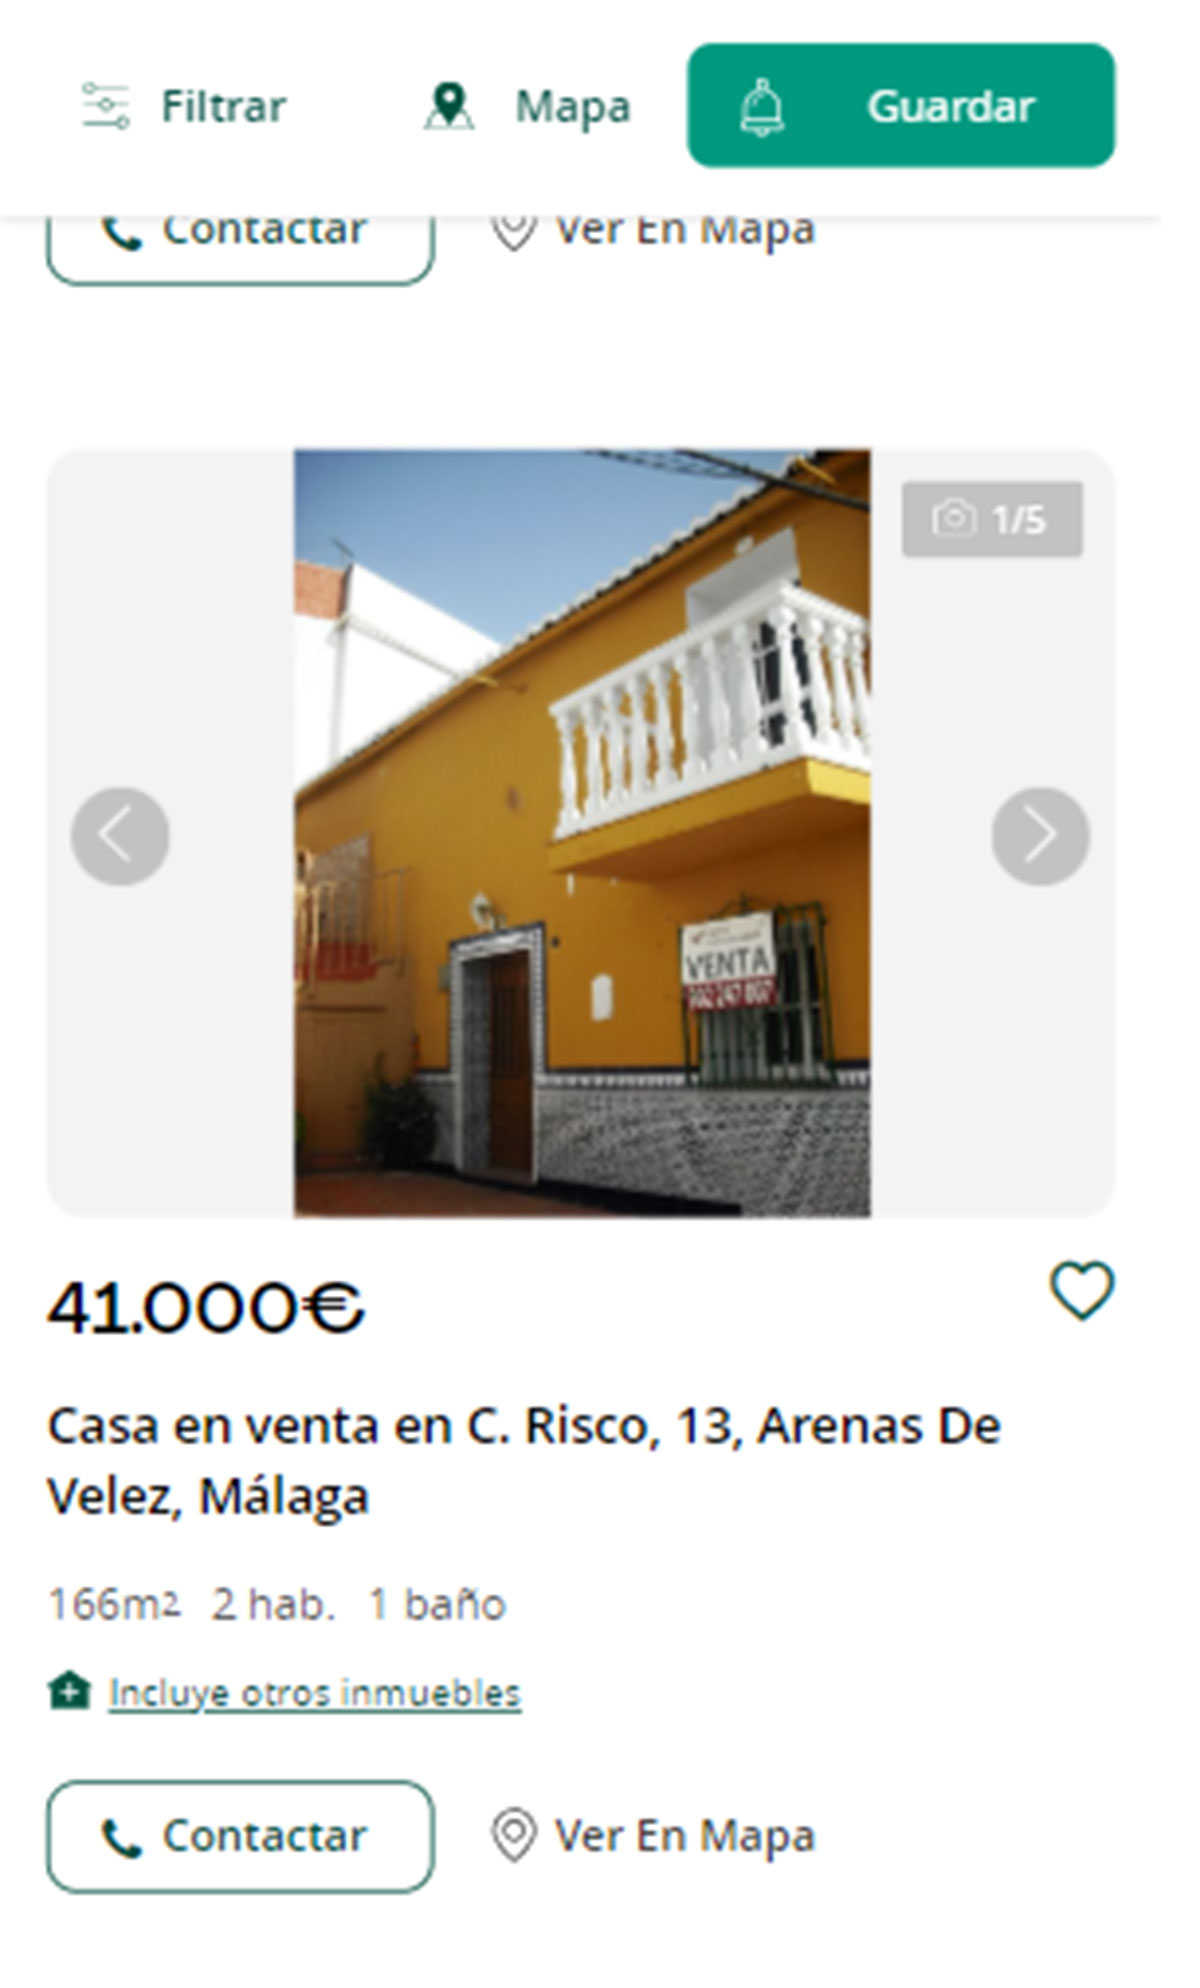 Piso a la venta en Málaga por 41.000 euros